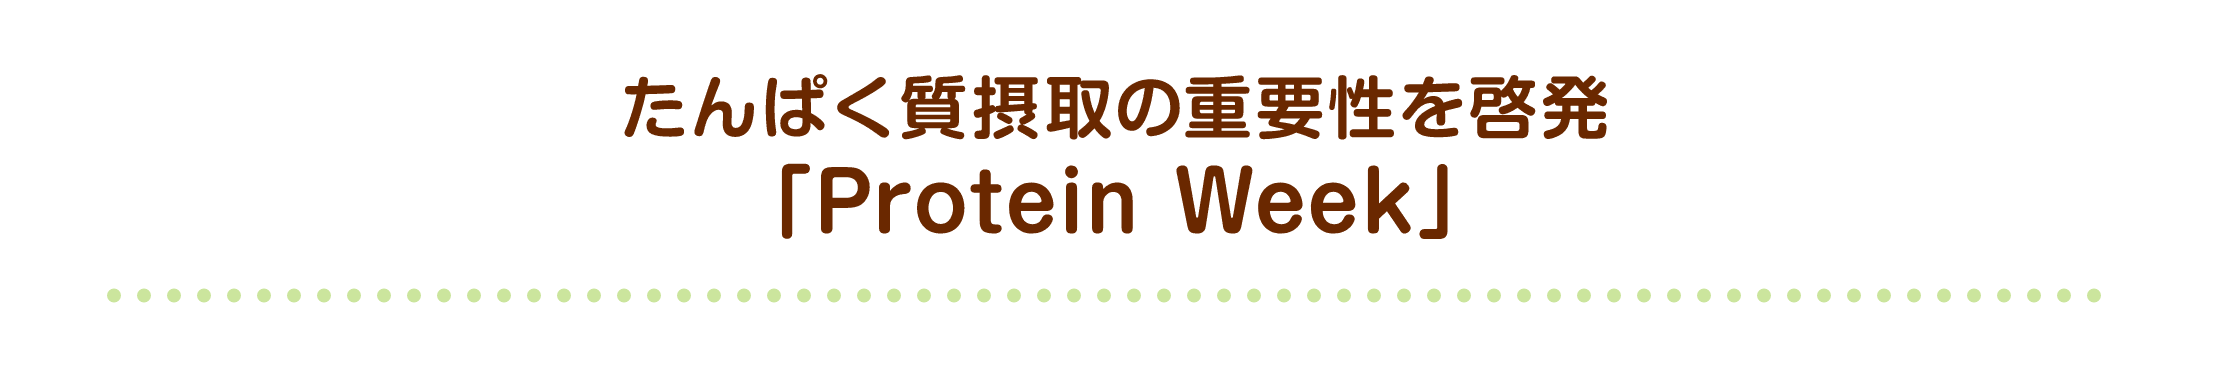 たんぱく質摂取の重要性を啓発「Protein Week」